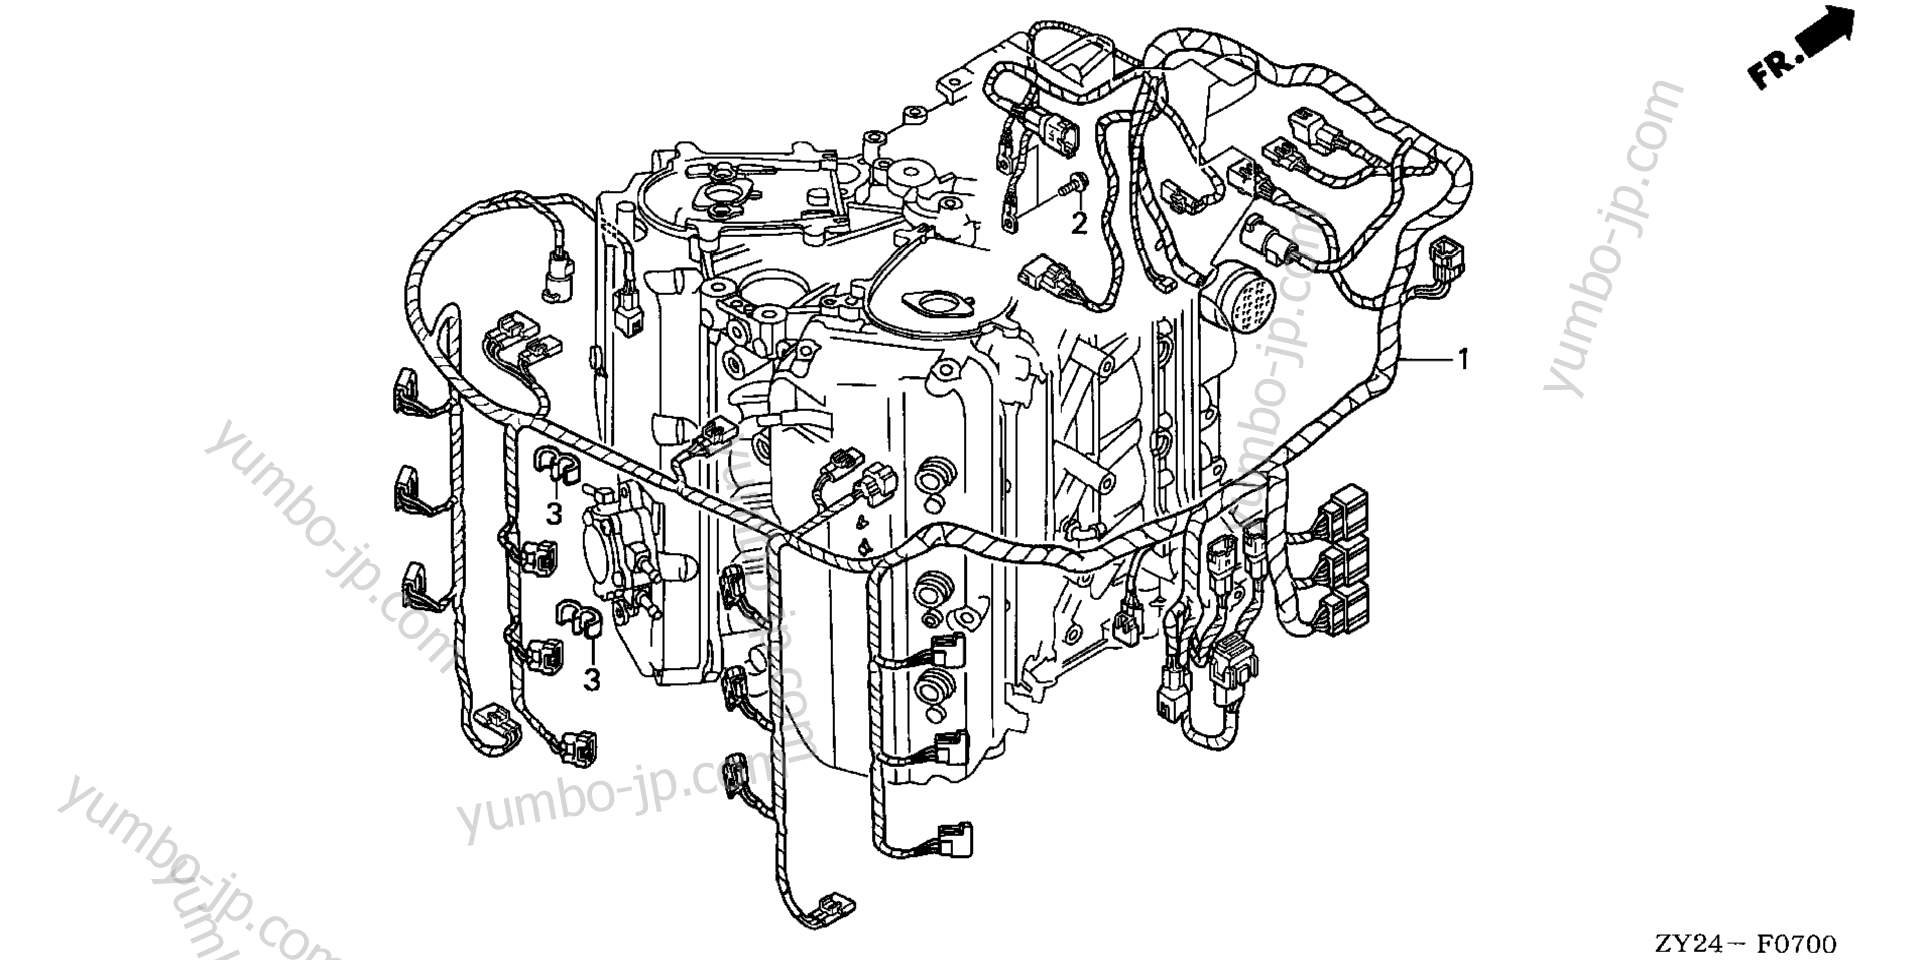 Проводка для стационарных двигателей HONDA BF225A2 XXCA 